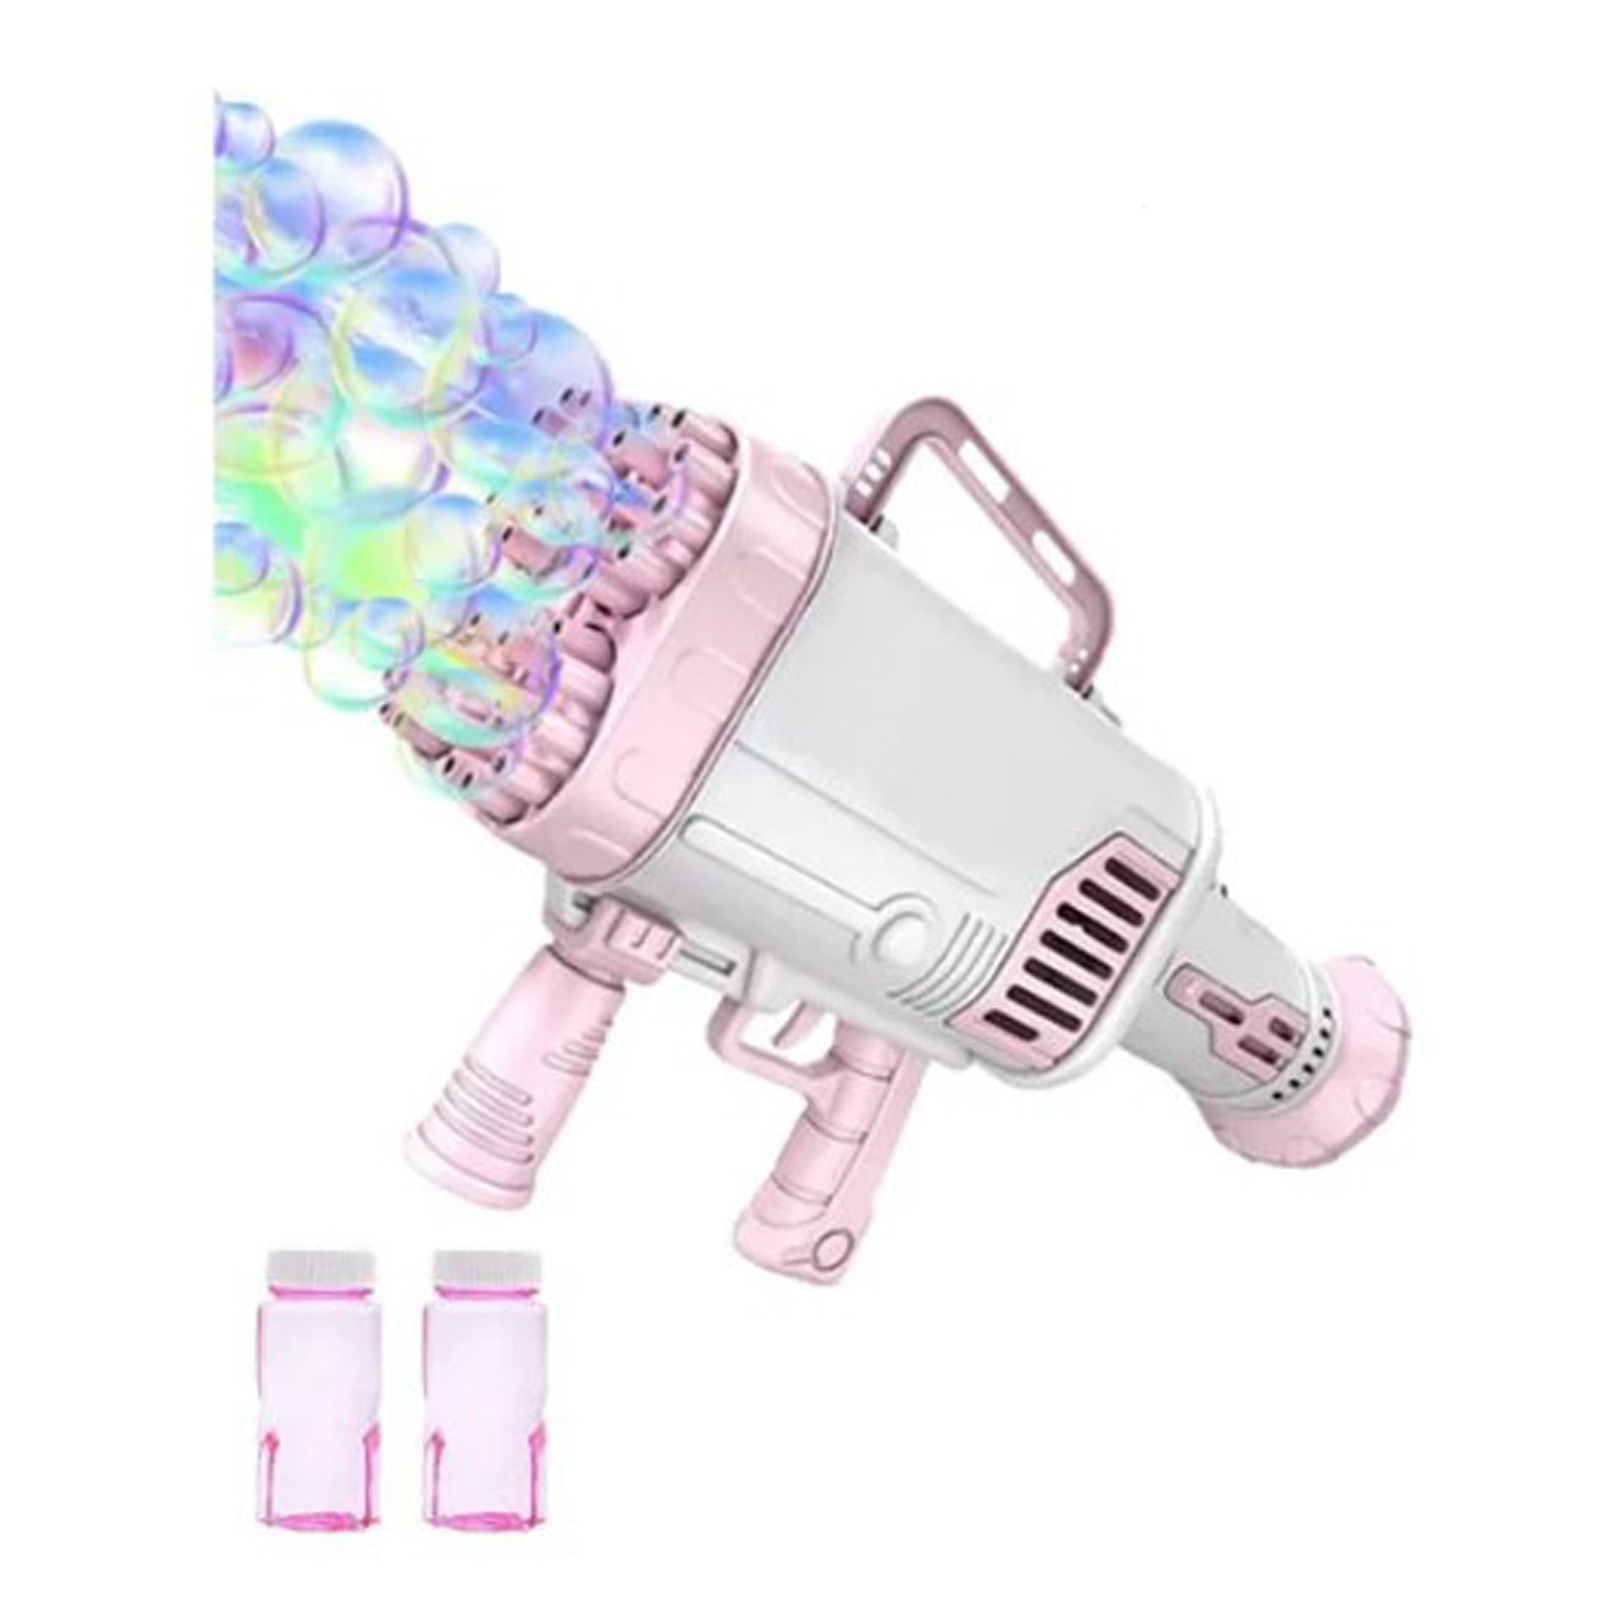 Пушка-Генератор мыльных пузырей Market toys lab розовый генератор мыльных пузырей market toys lab bubble rocket